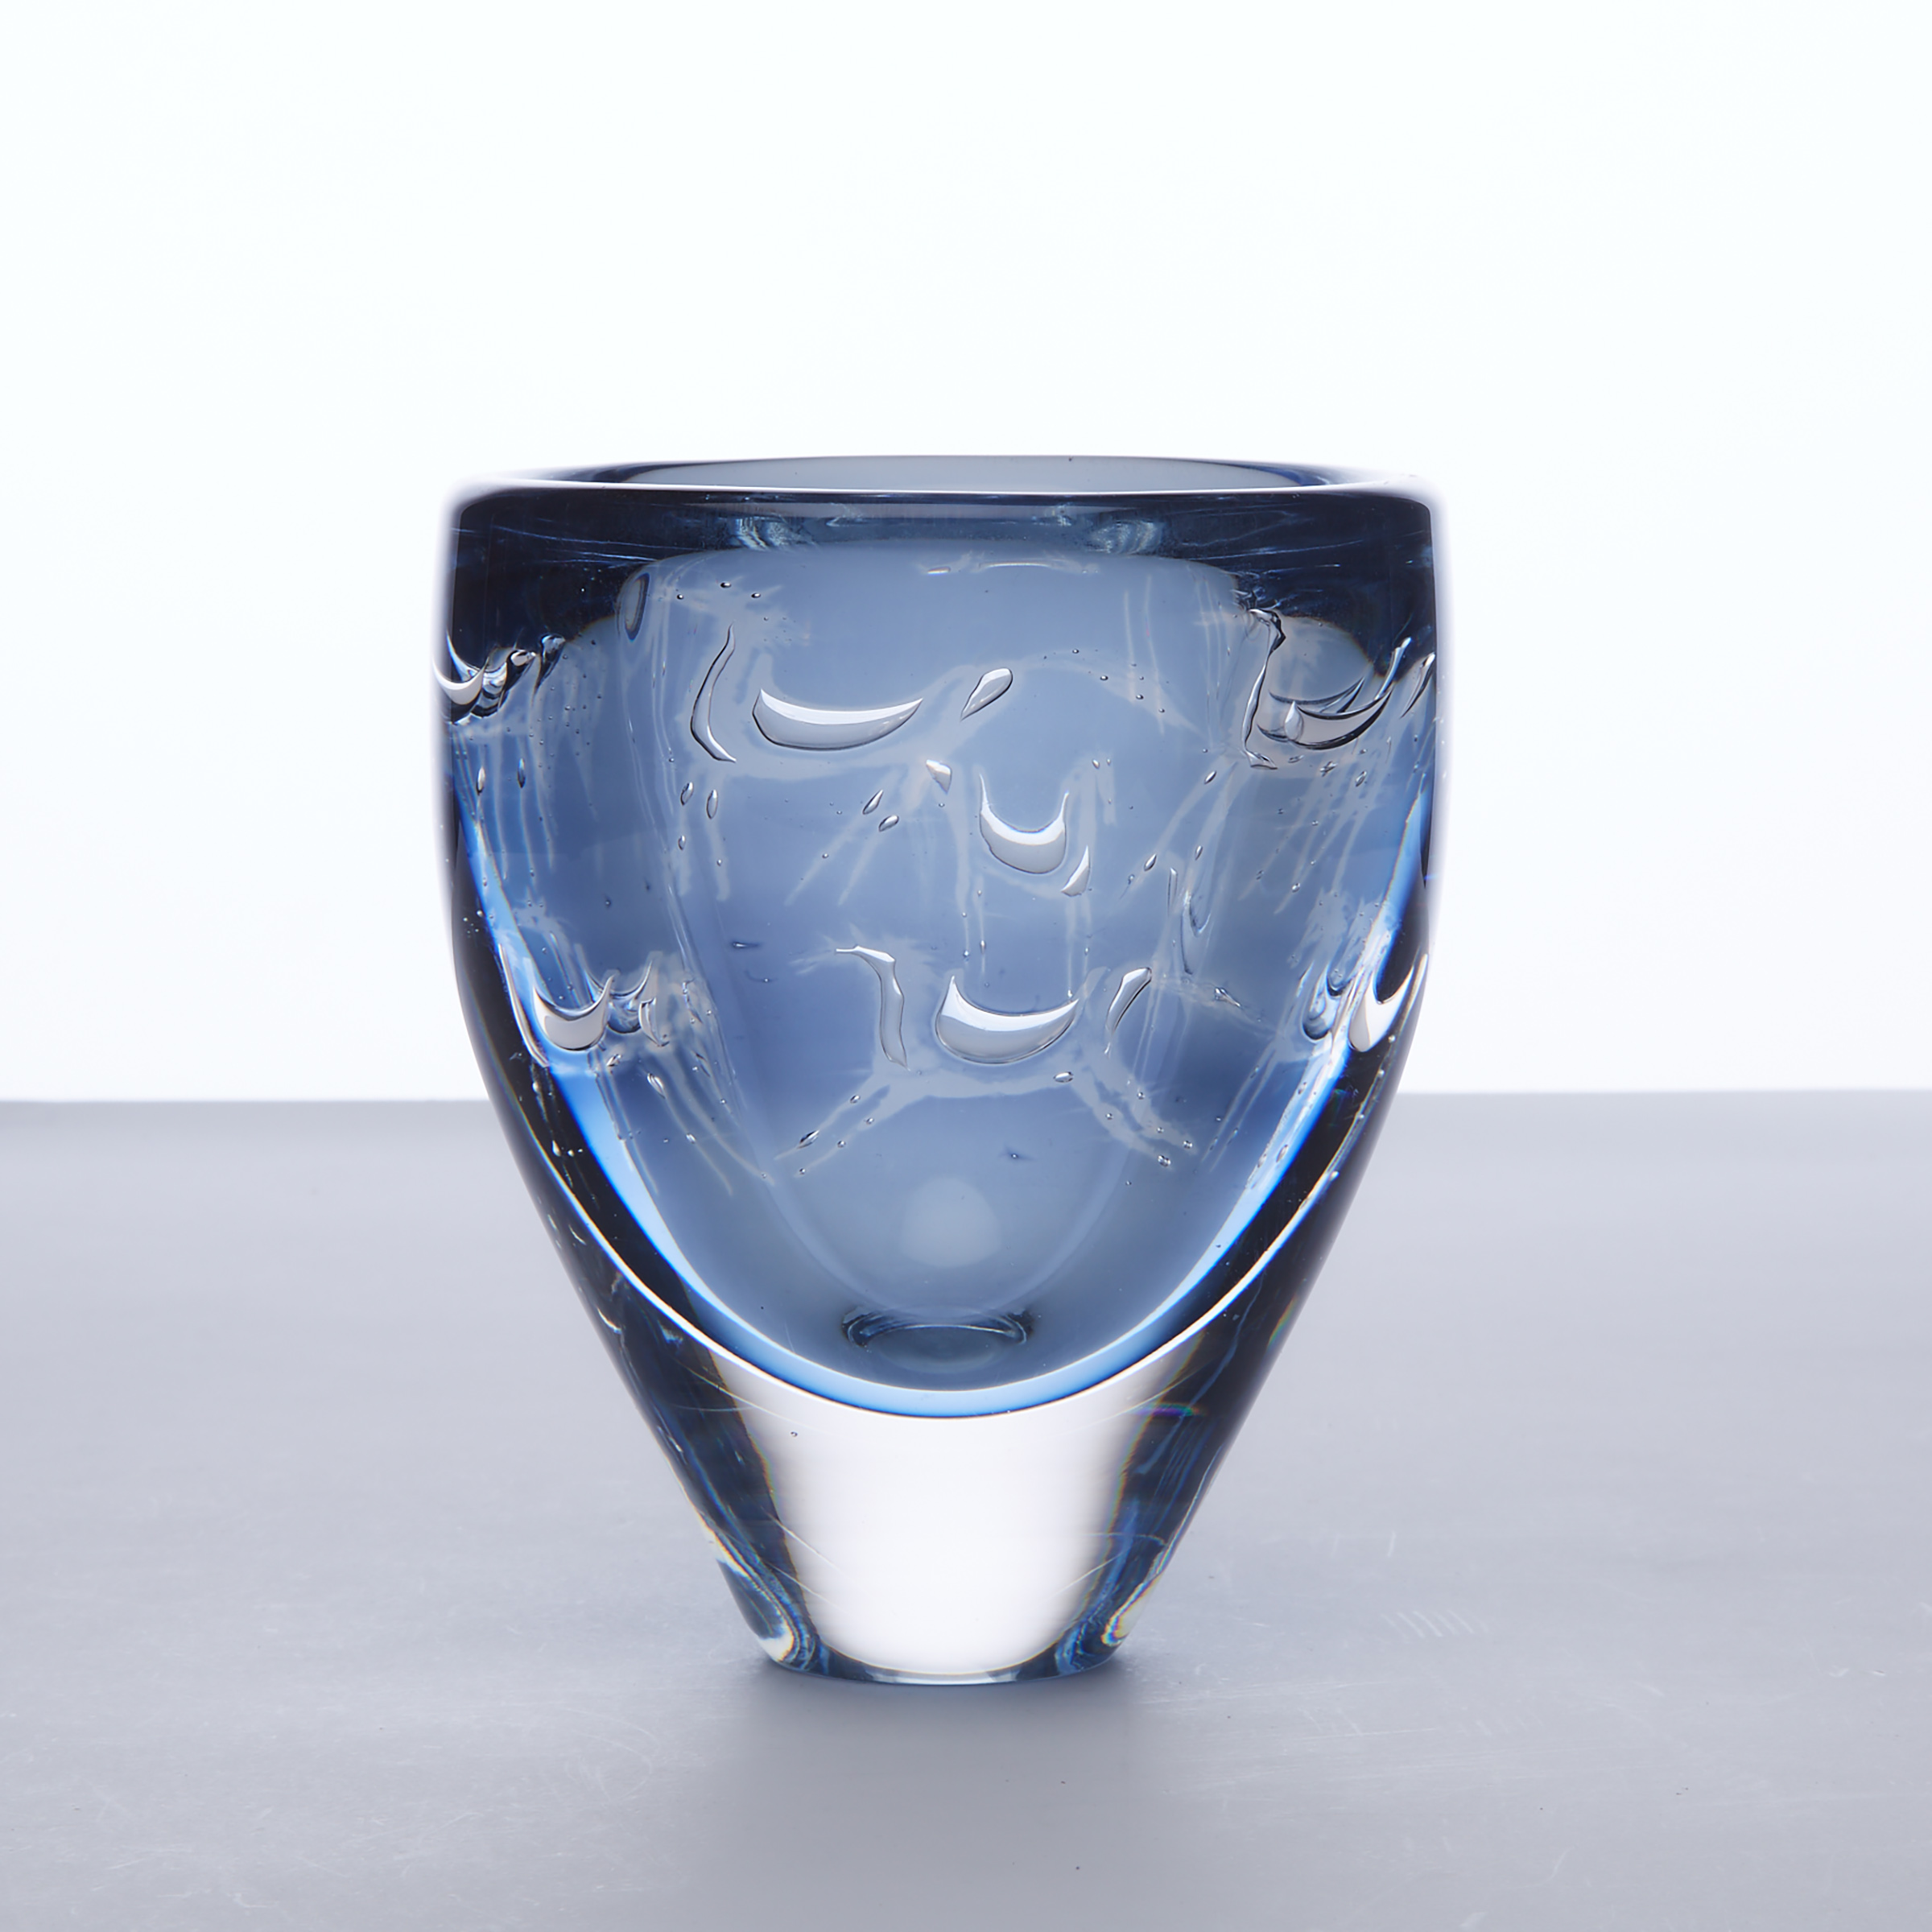 Orrefors Ariel Blue Glass Vase, Ingeborg Lundin, 1962